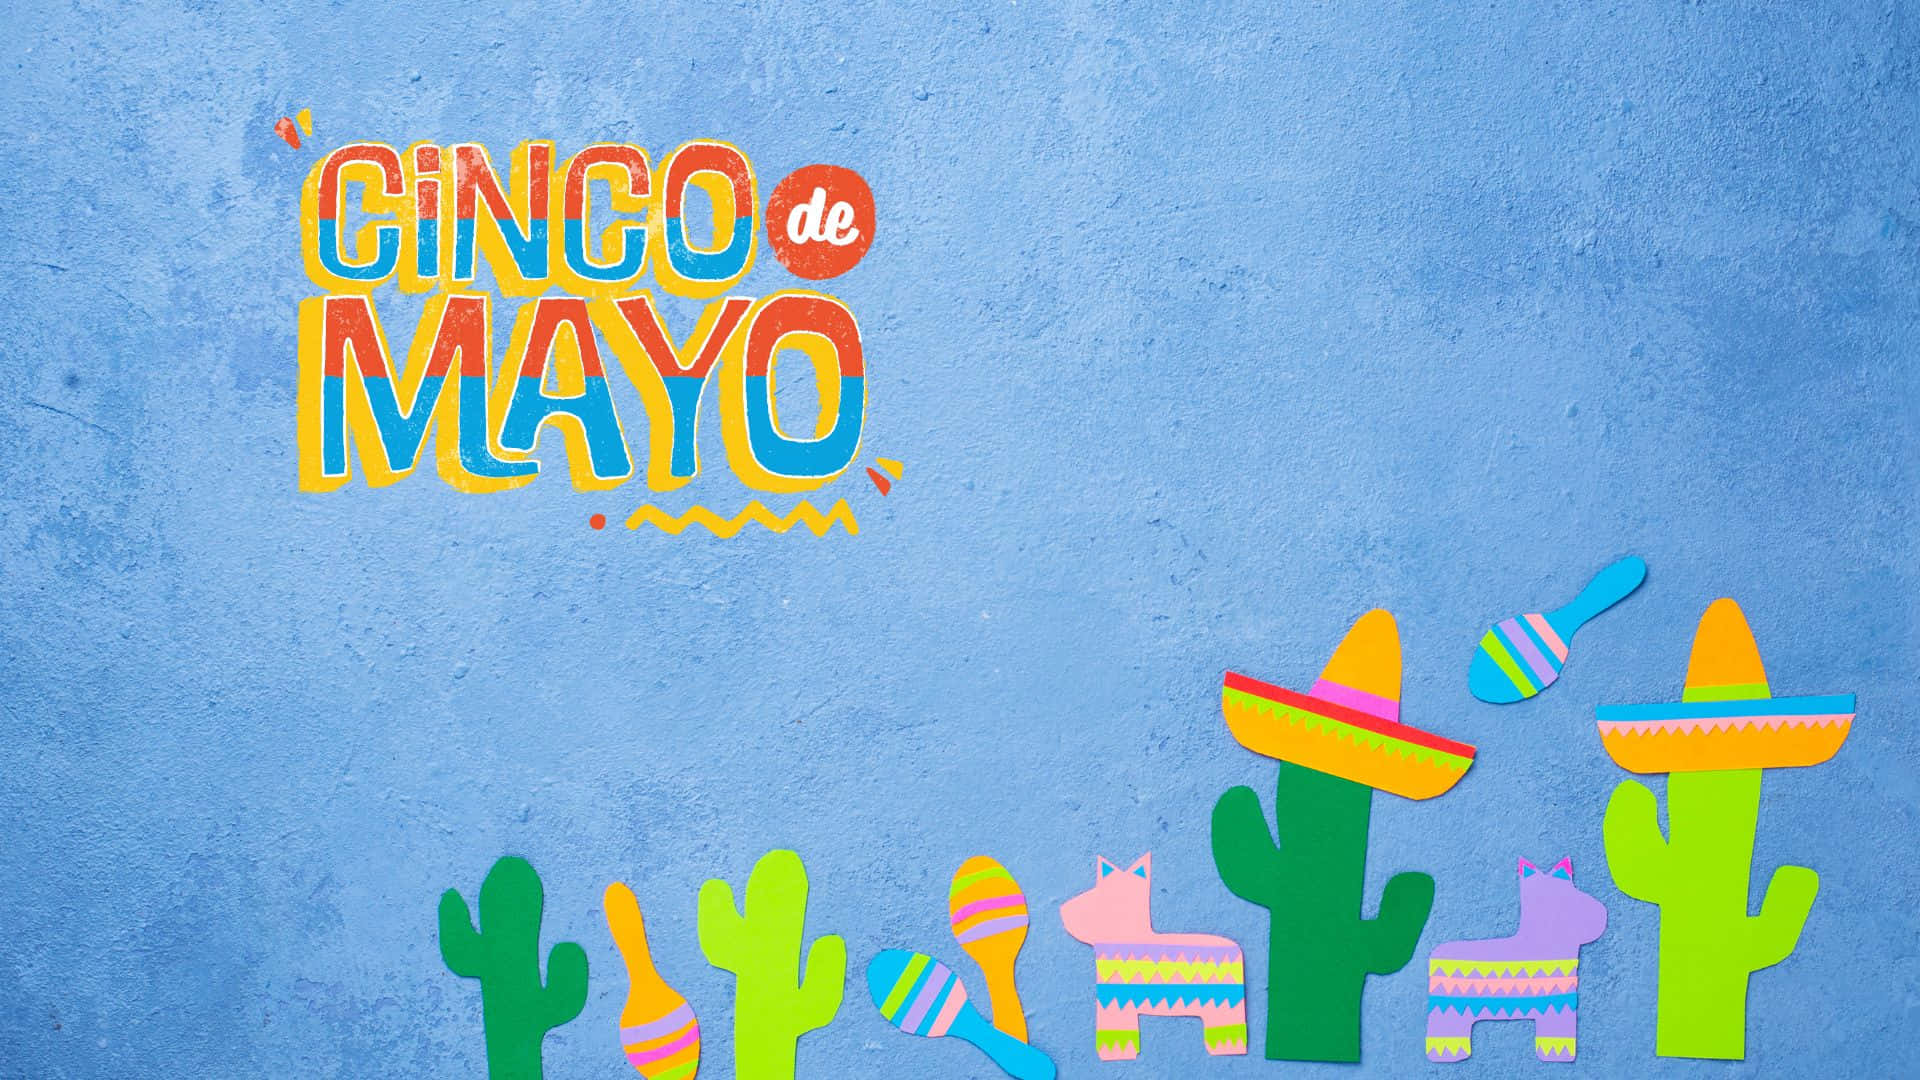 Firacinco De Mayo Med Margaritas, Tacos Och Roligt. Wallpaper